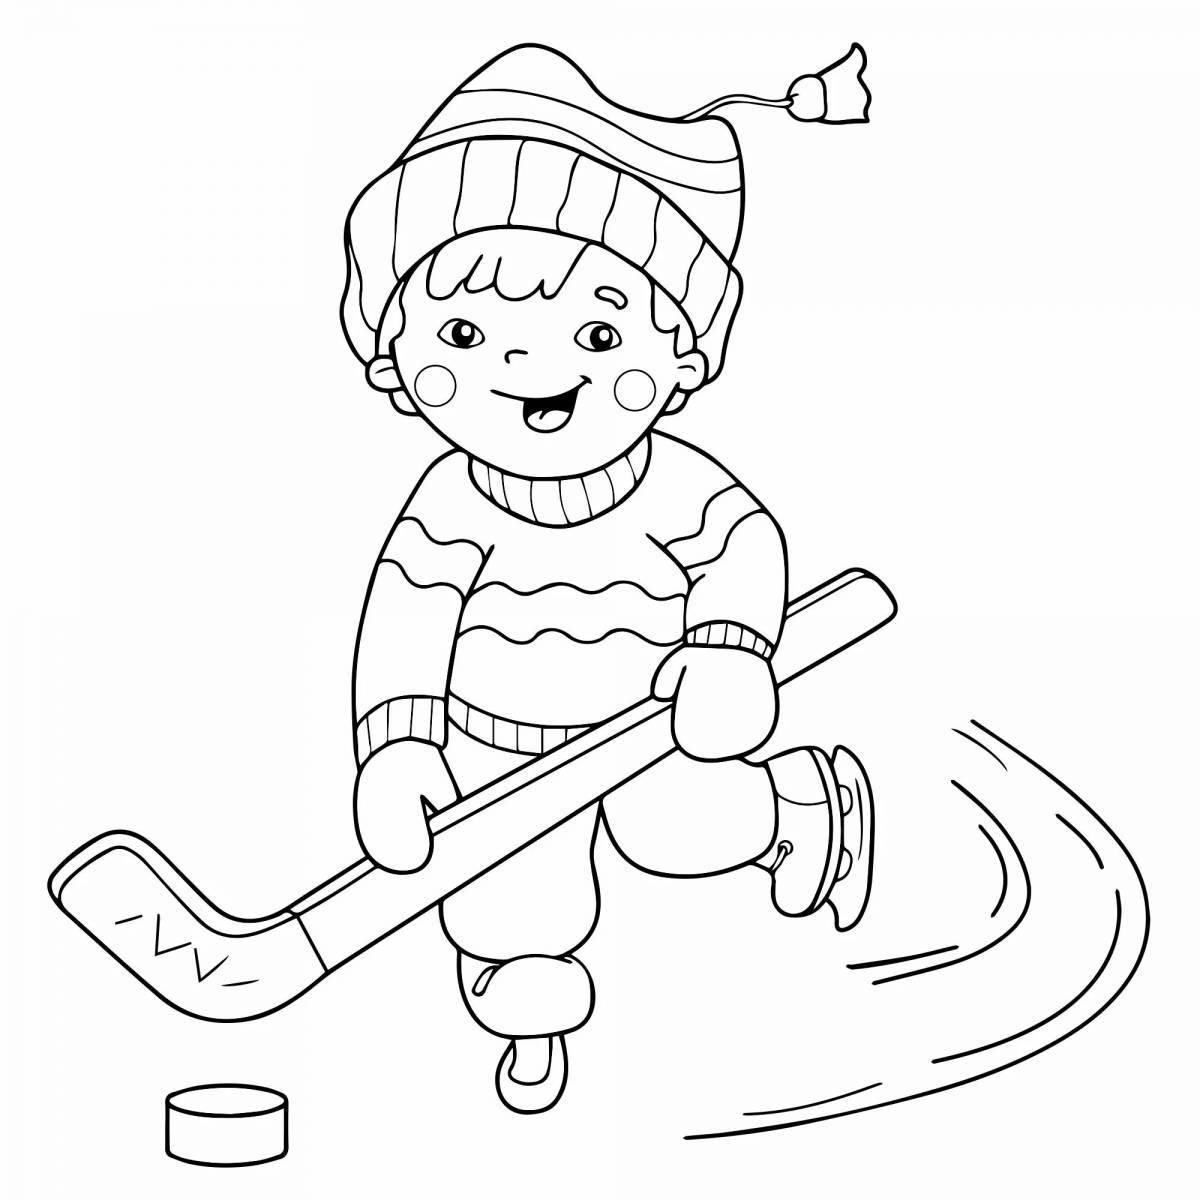 Увлекательная раскраска для детей о зимних видах спорта